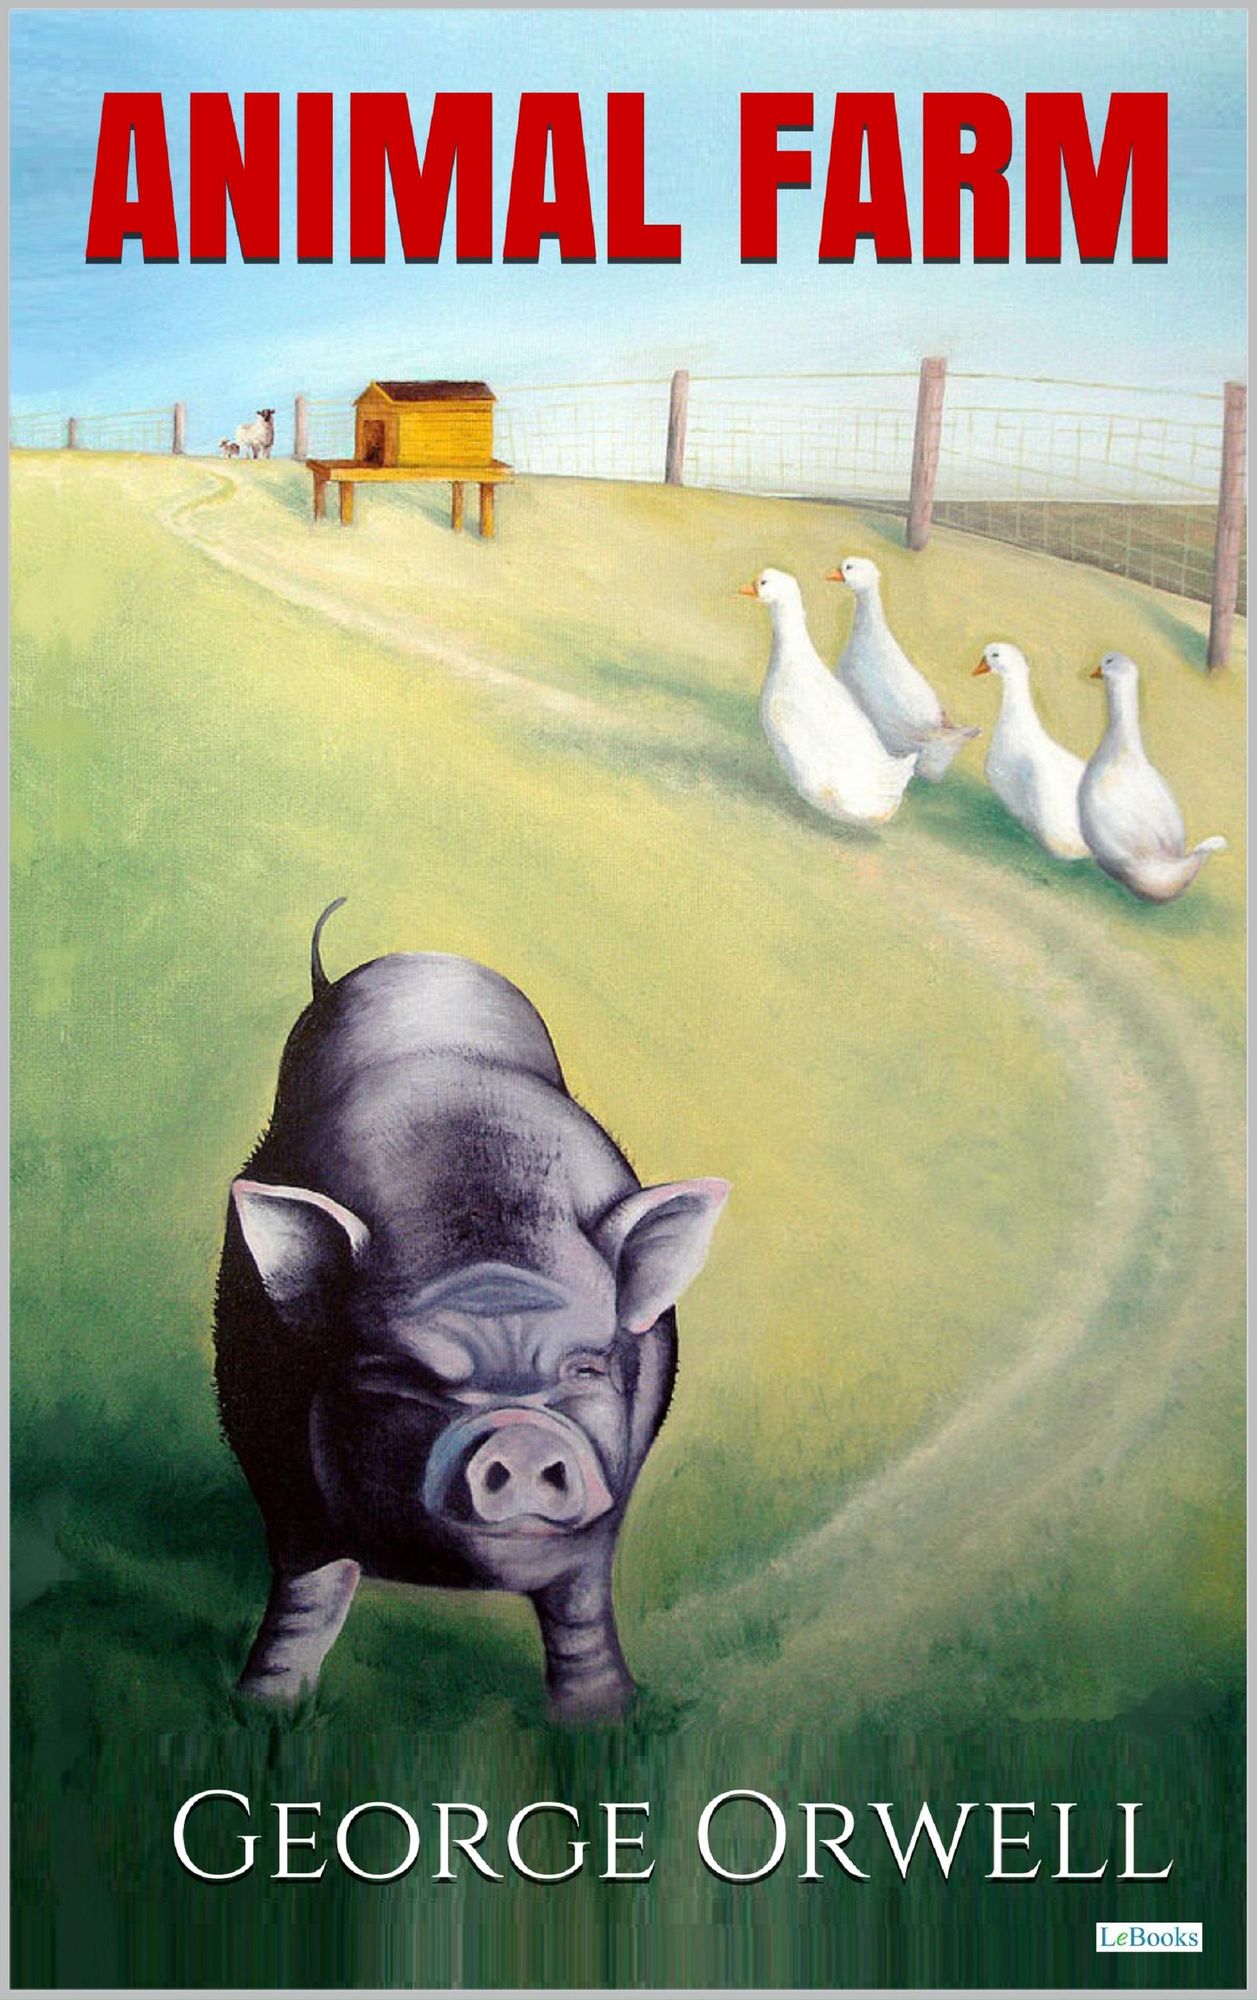 Animal Farm - Orwell von George Orwell. eBooks | Orell Füssli